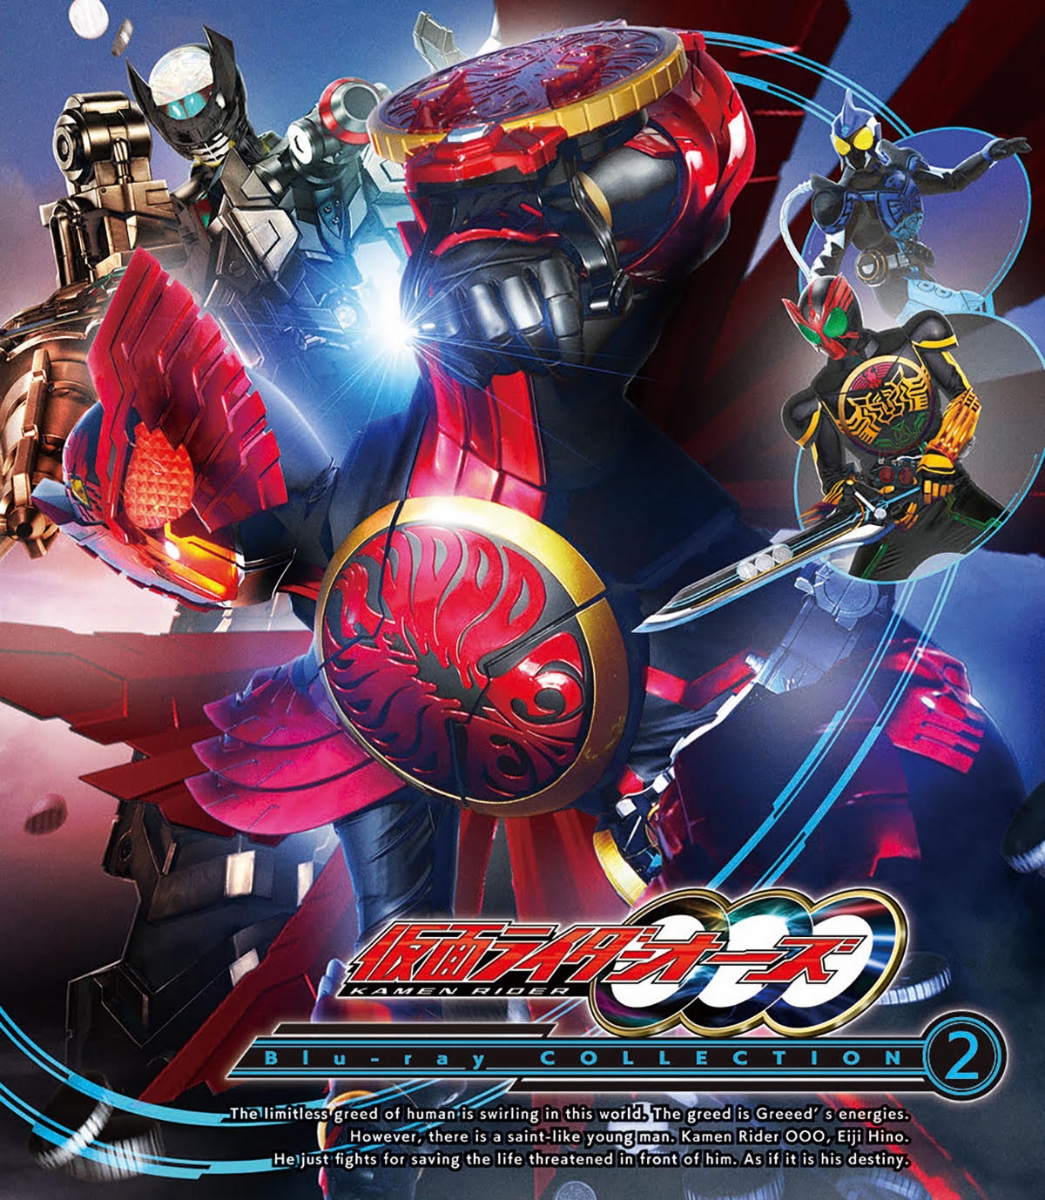 楽天ブックス: 仮面ライダーOOO(オーズ) Blu-ray COLLECTION 2【Blu